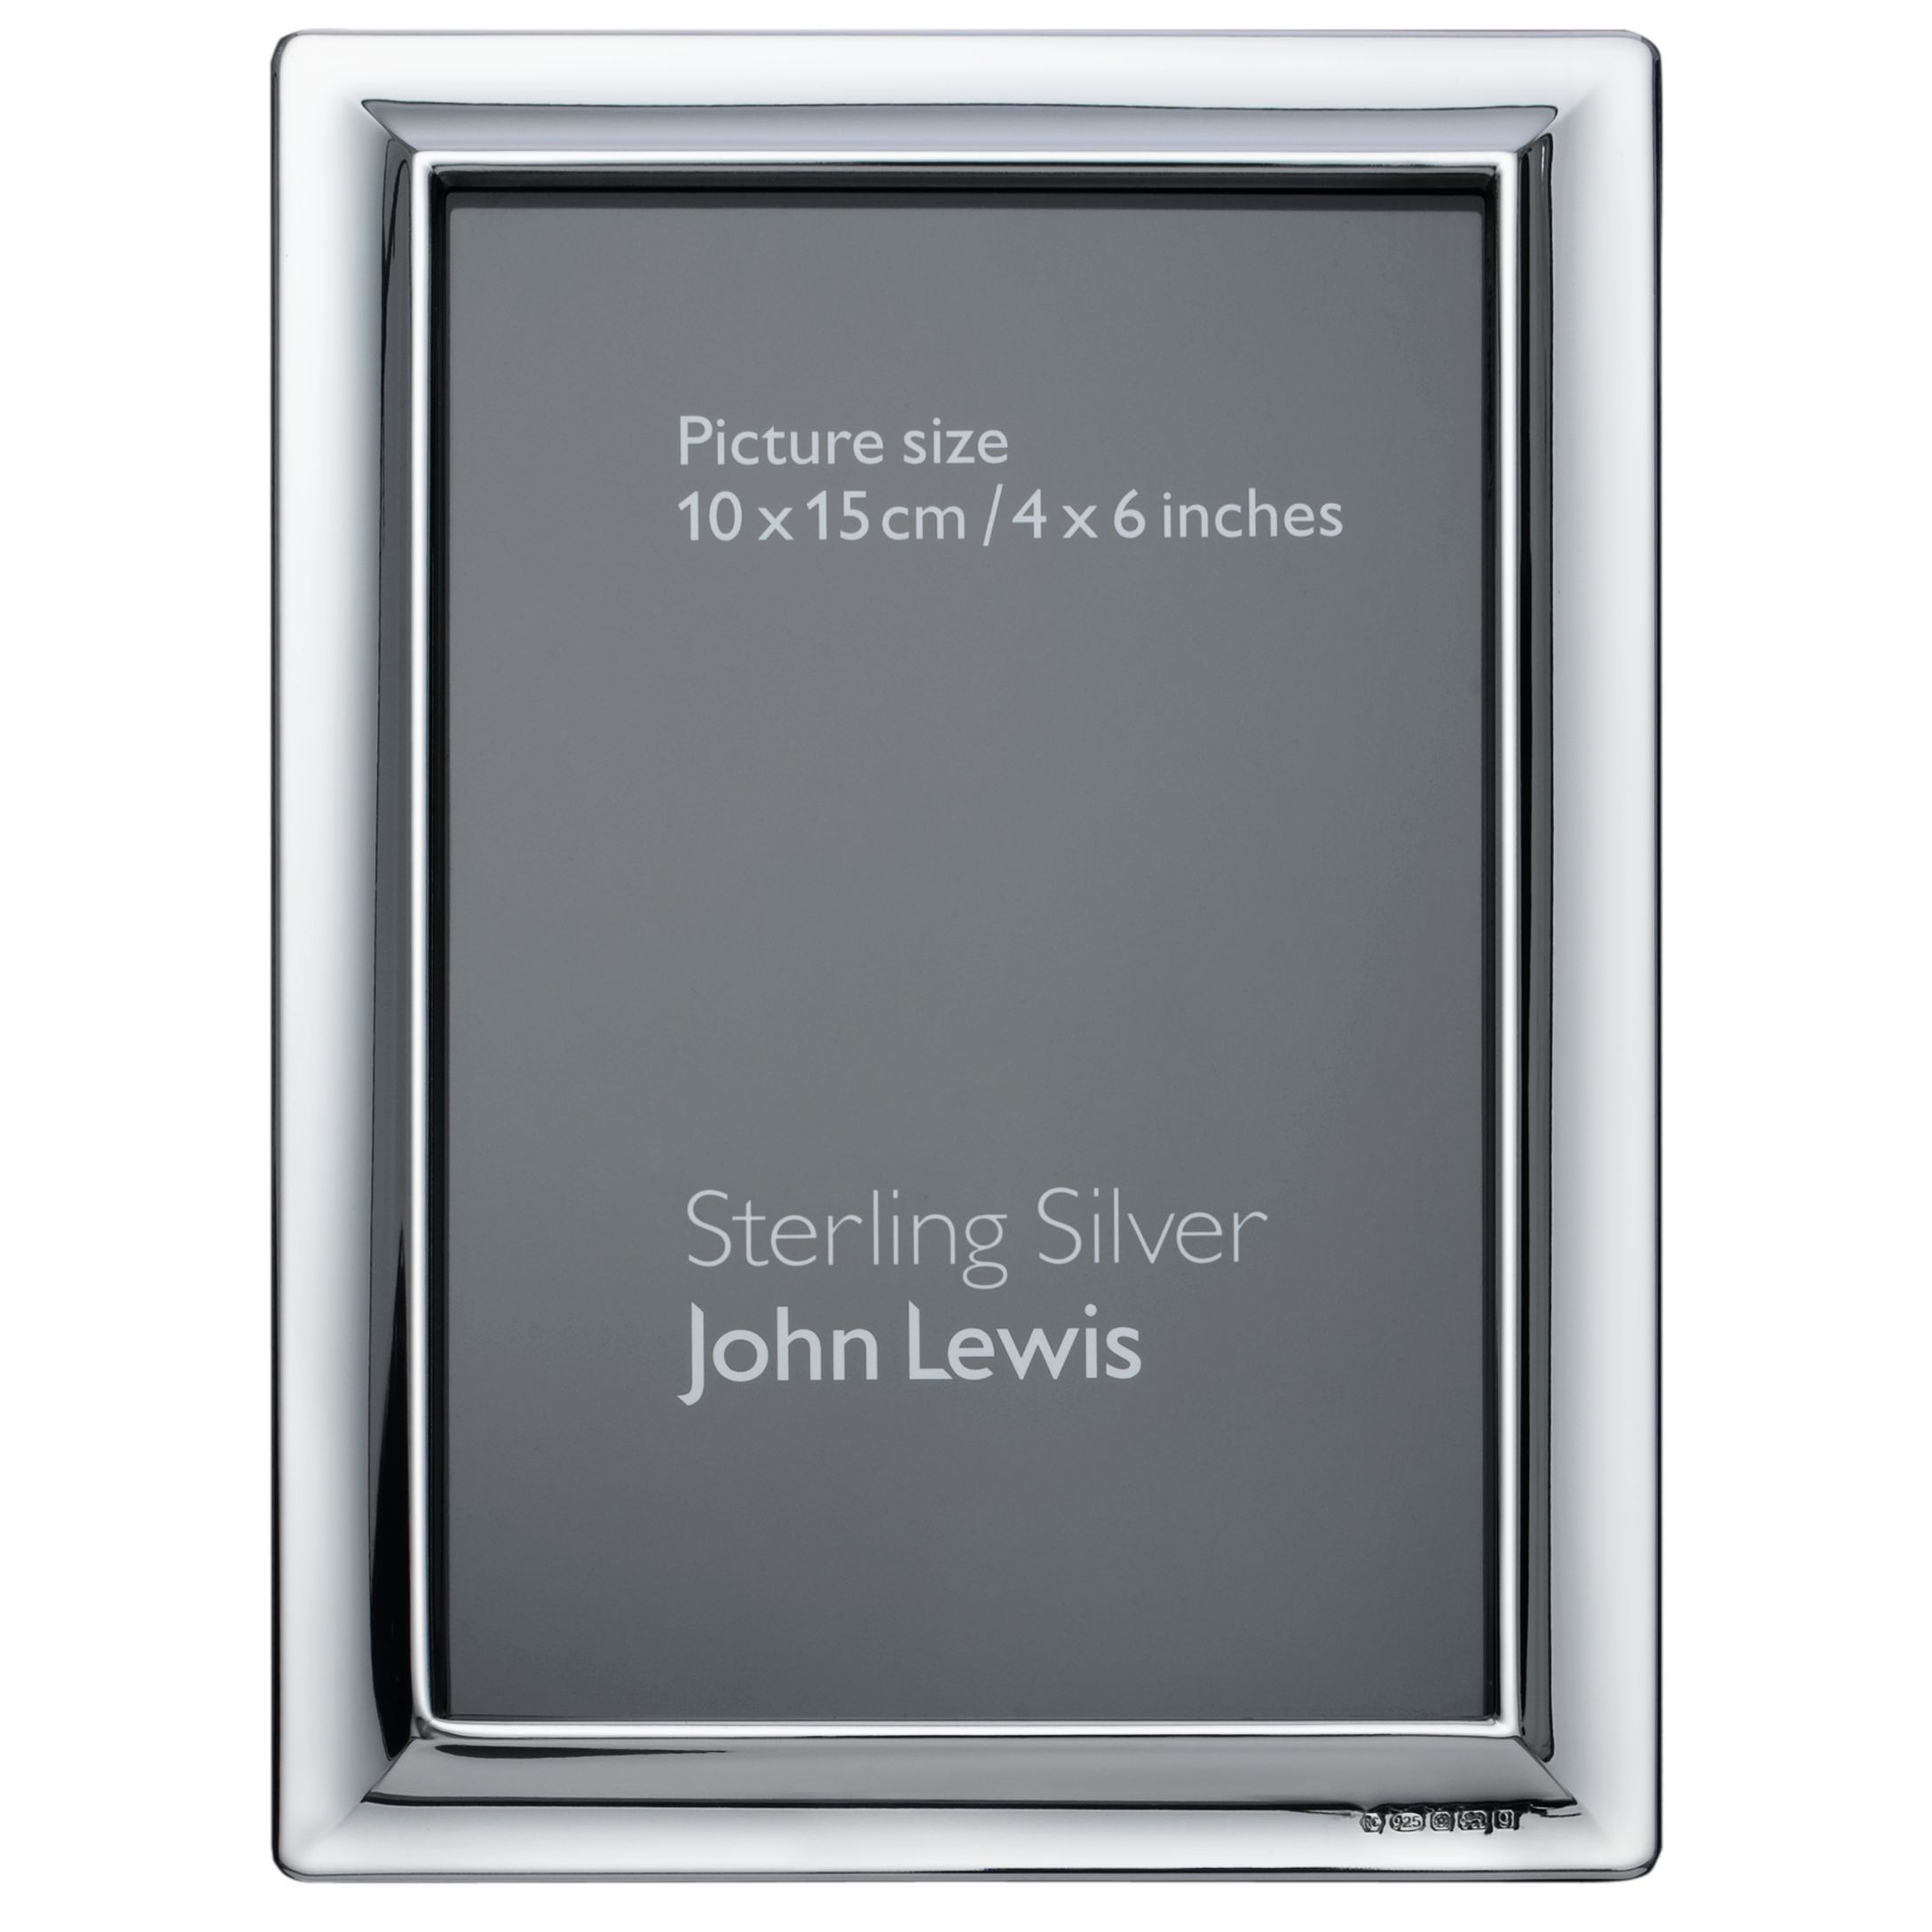 Alexander Sterling Silver Frames